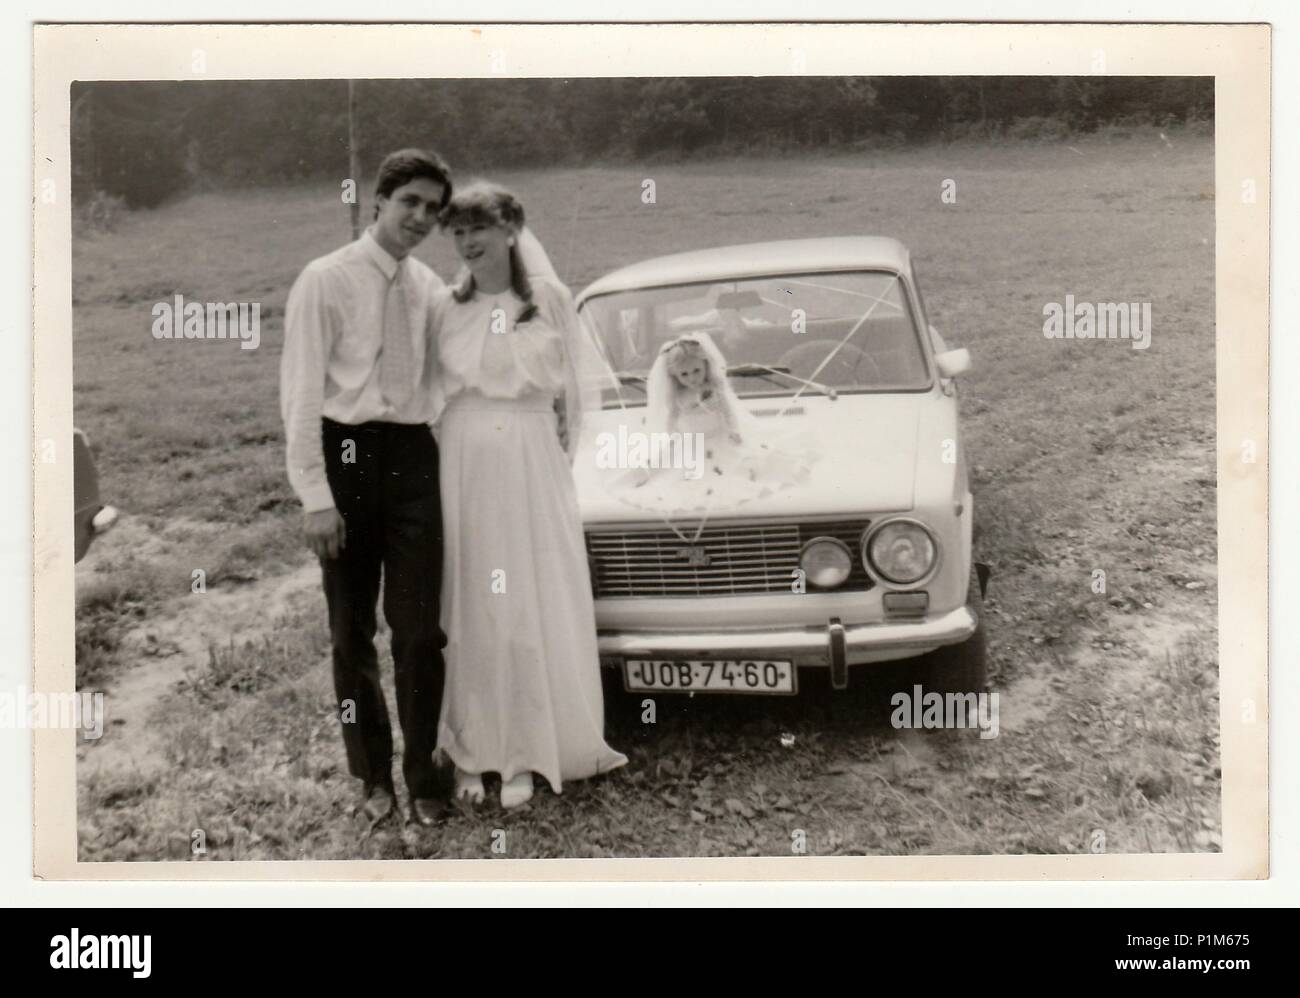 Die tschechoslowakische SOZIALISTISCHE REPUBLIK - circa 1970 s: Retro Foto zeigt Brautpaare und Hochzeit Auto. Schwarz & Weiß vintage Fotografie. Stockfoto